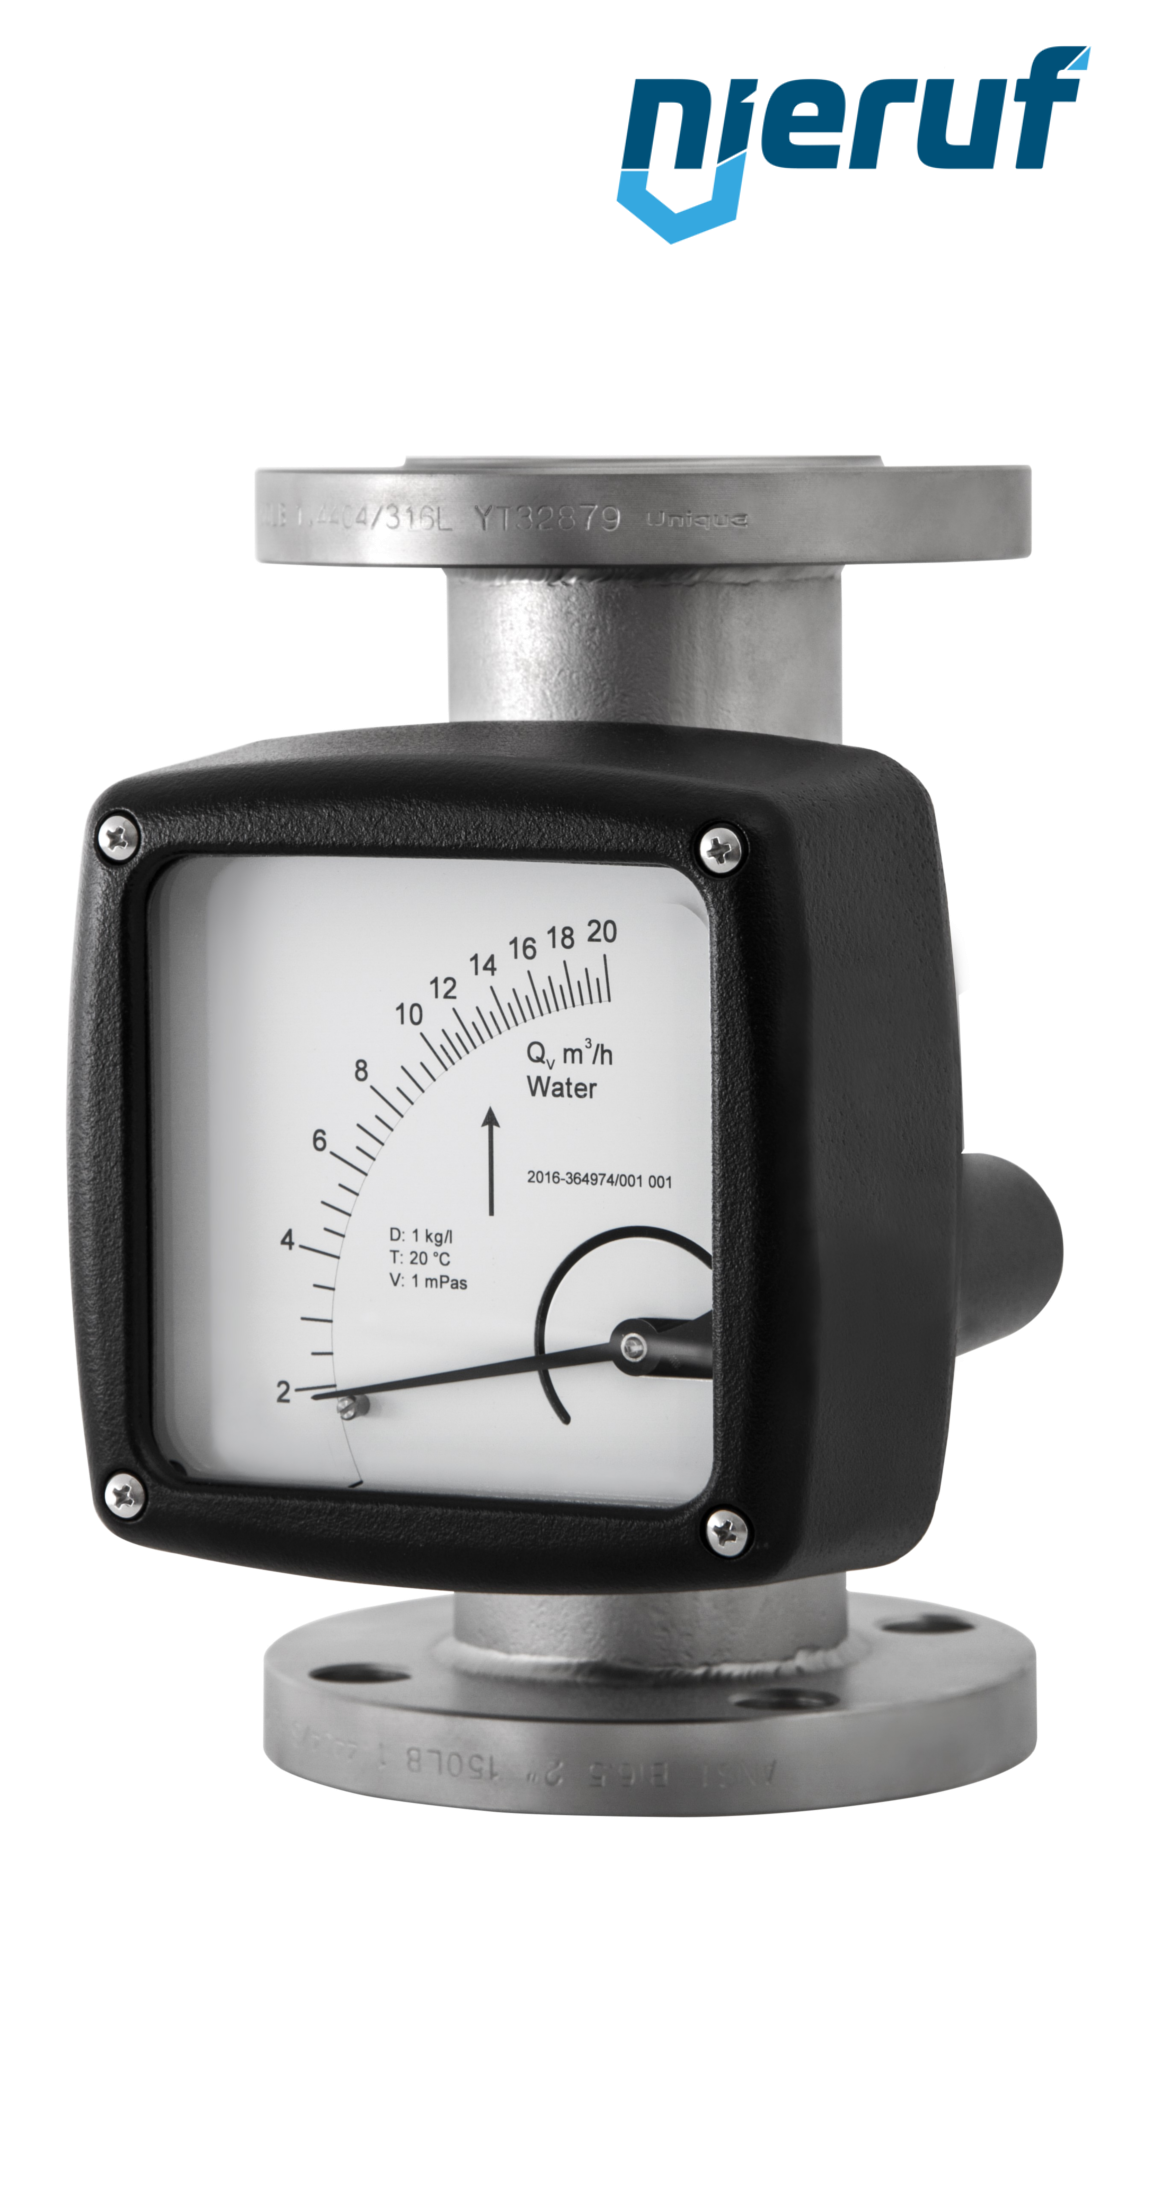 misuratore di flusso / rotametro completamente in metallo DN80-attacco 2500,0 - 25000,0 l/h tubo DN80 acqua